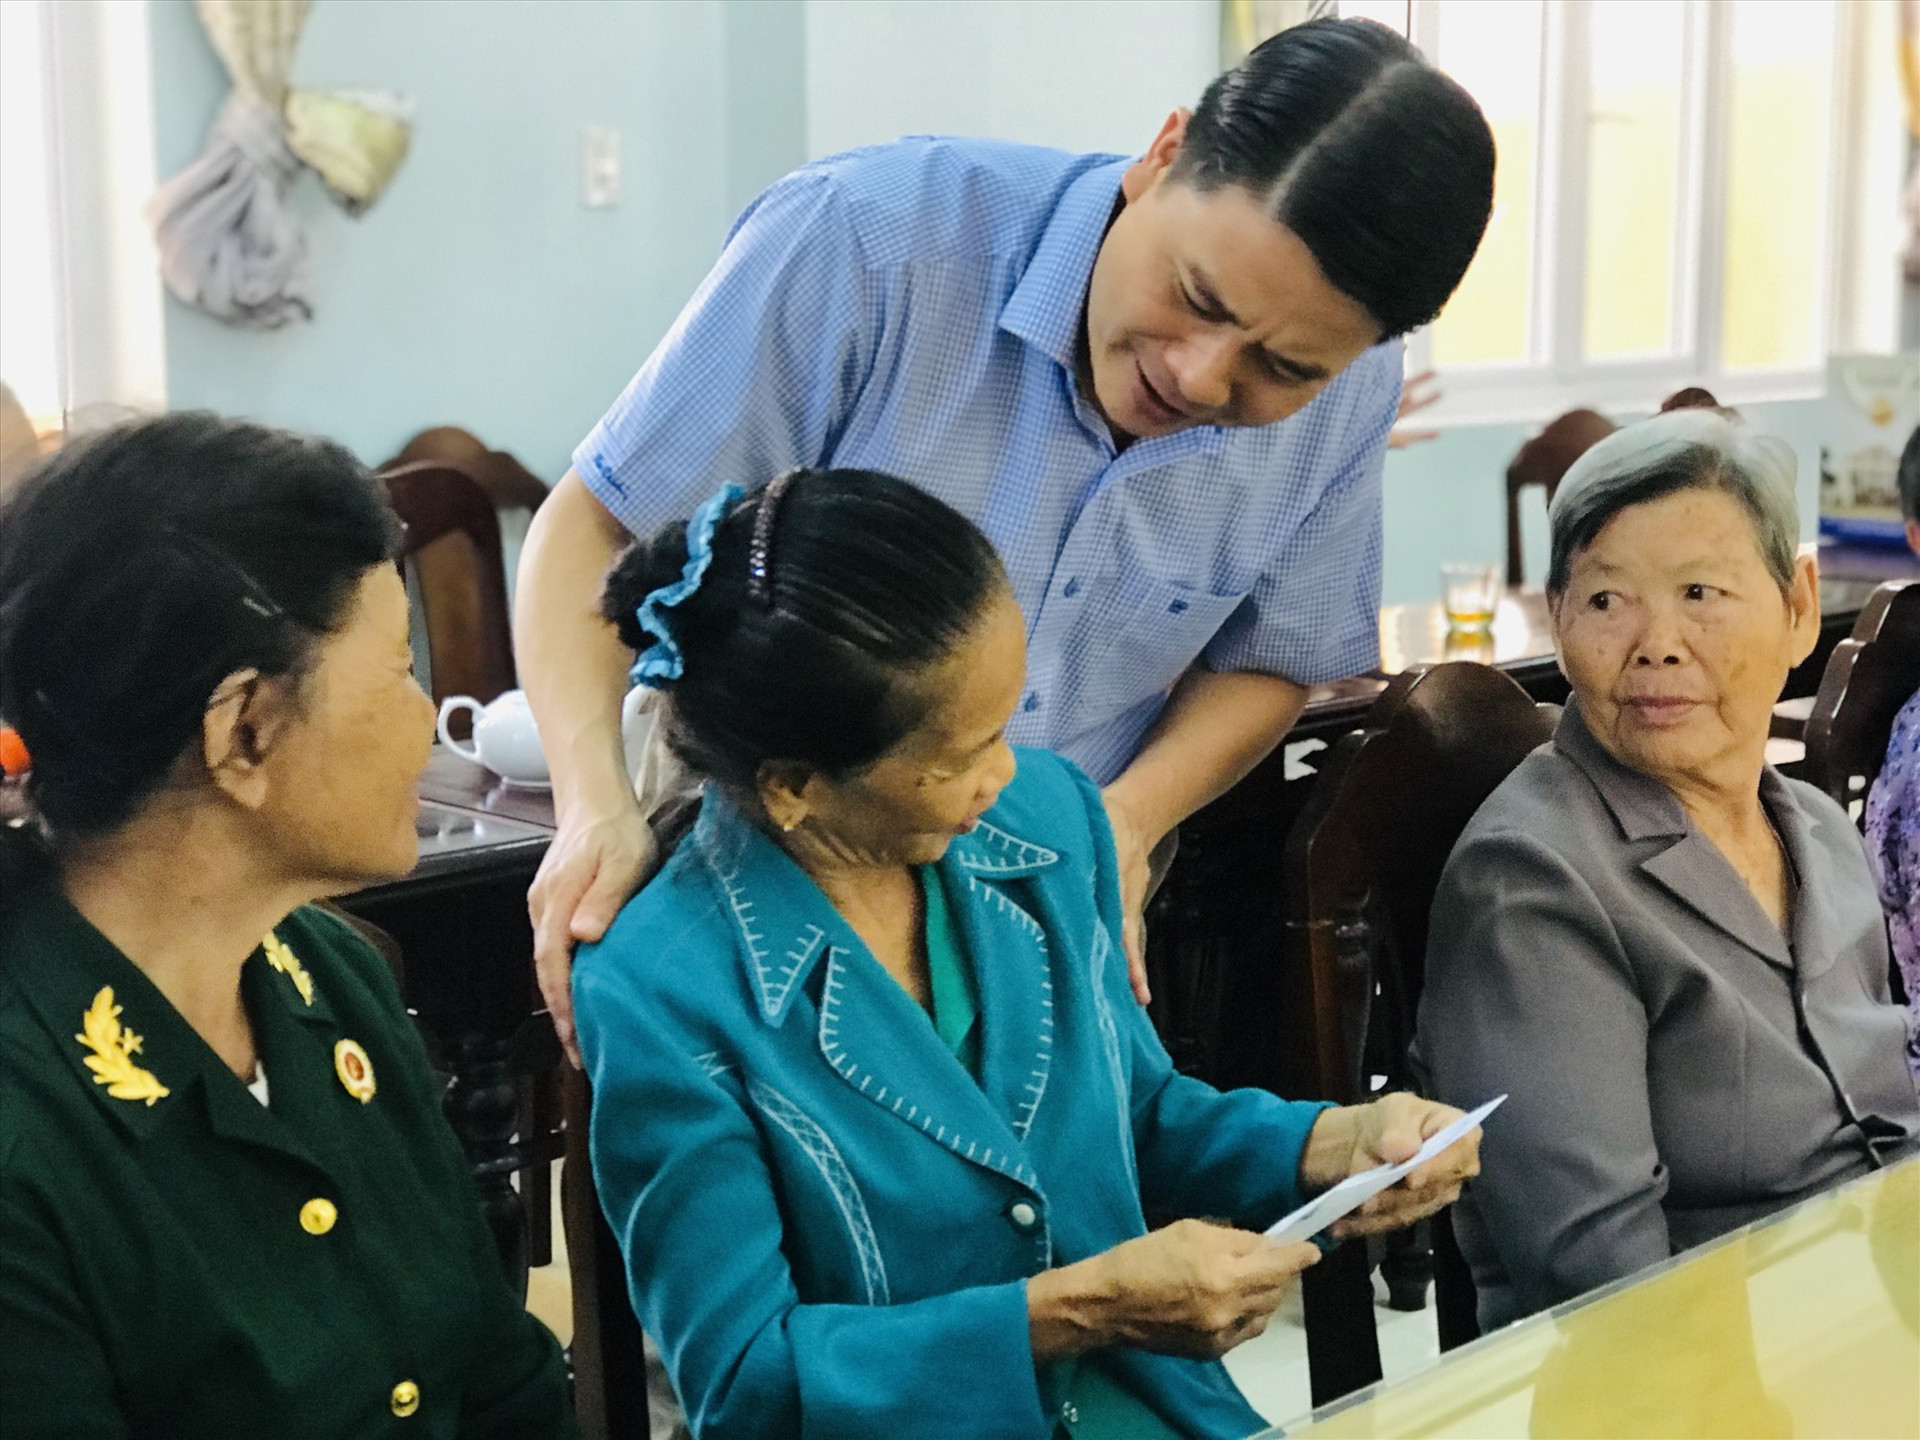 Phó Chủ tịch UBND tỉnh Trần Văn Tân trao quà cho người có công đang được chăm sóc tại Trung tâm nuôi dưỡng, điều dưỡng người có công tỉnh. Ảnh: Q.T